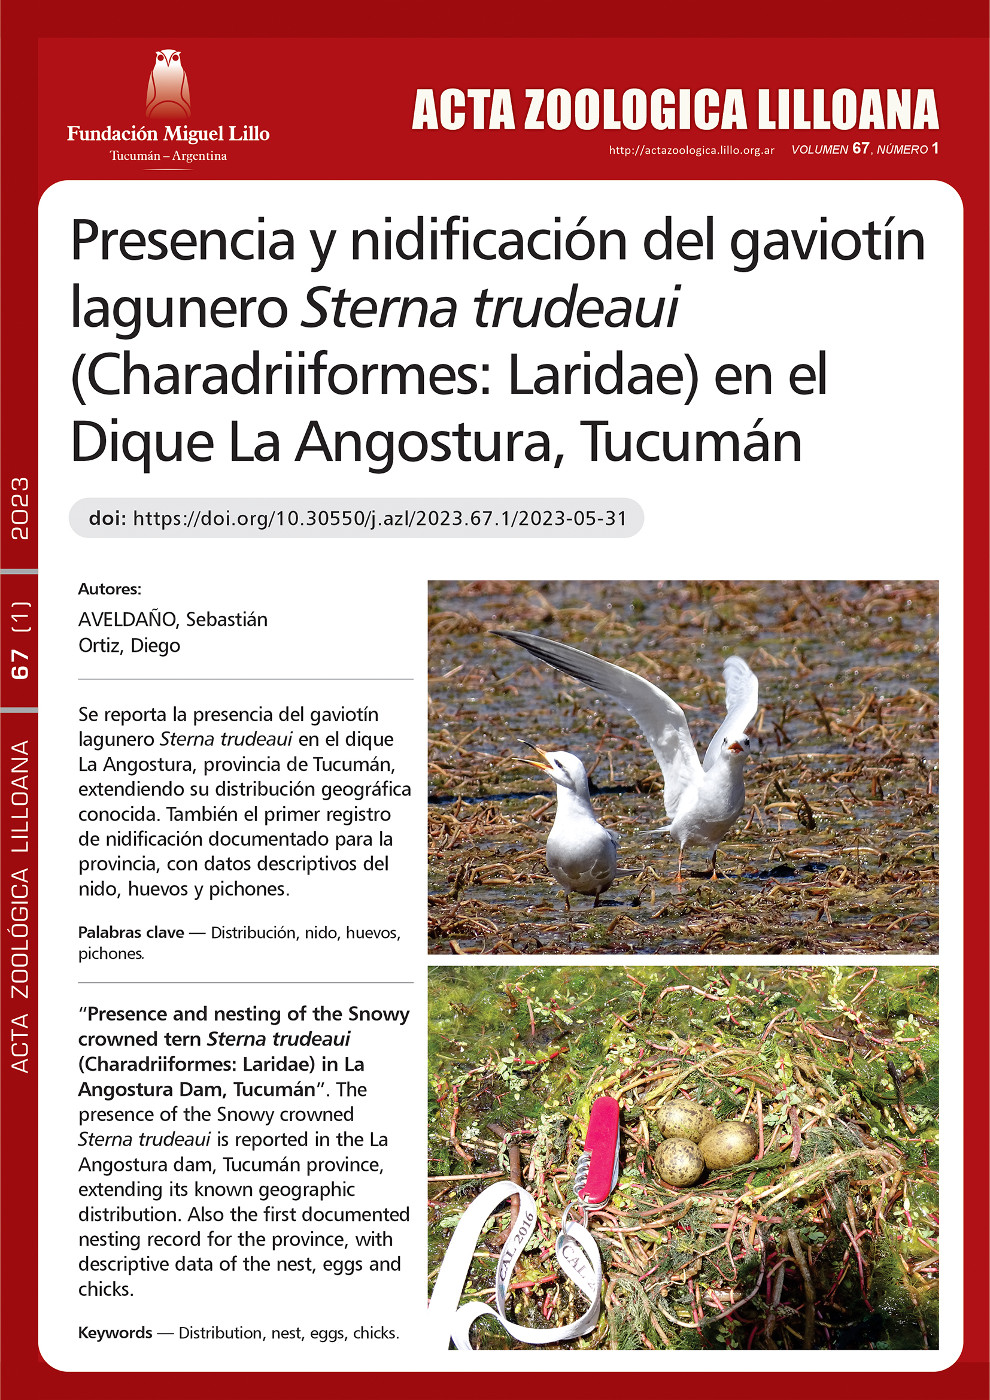 Presencia y nidificación del gaviotín lagunero Sterna trudeaui (Charadriiformes: Laridae) en el Dique La Angostura, Tucumán